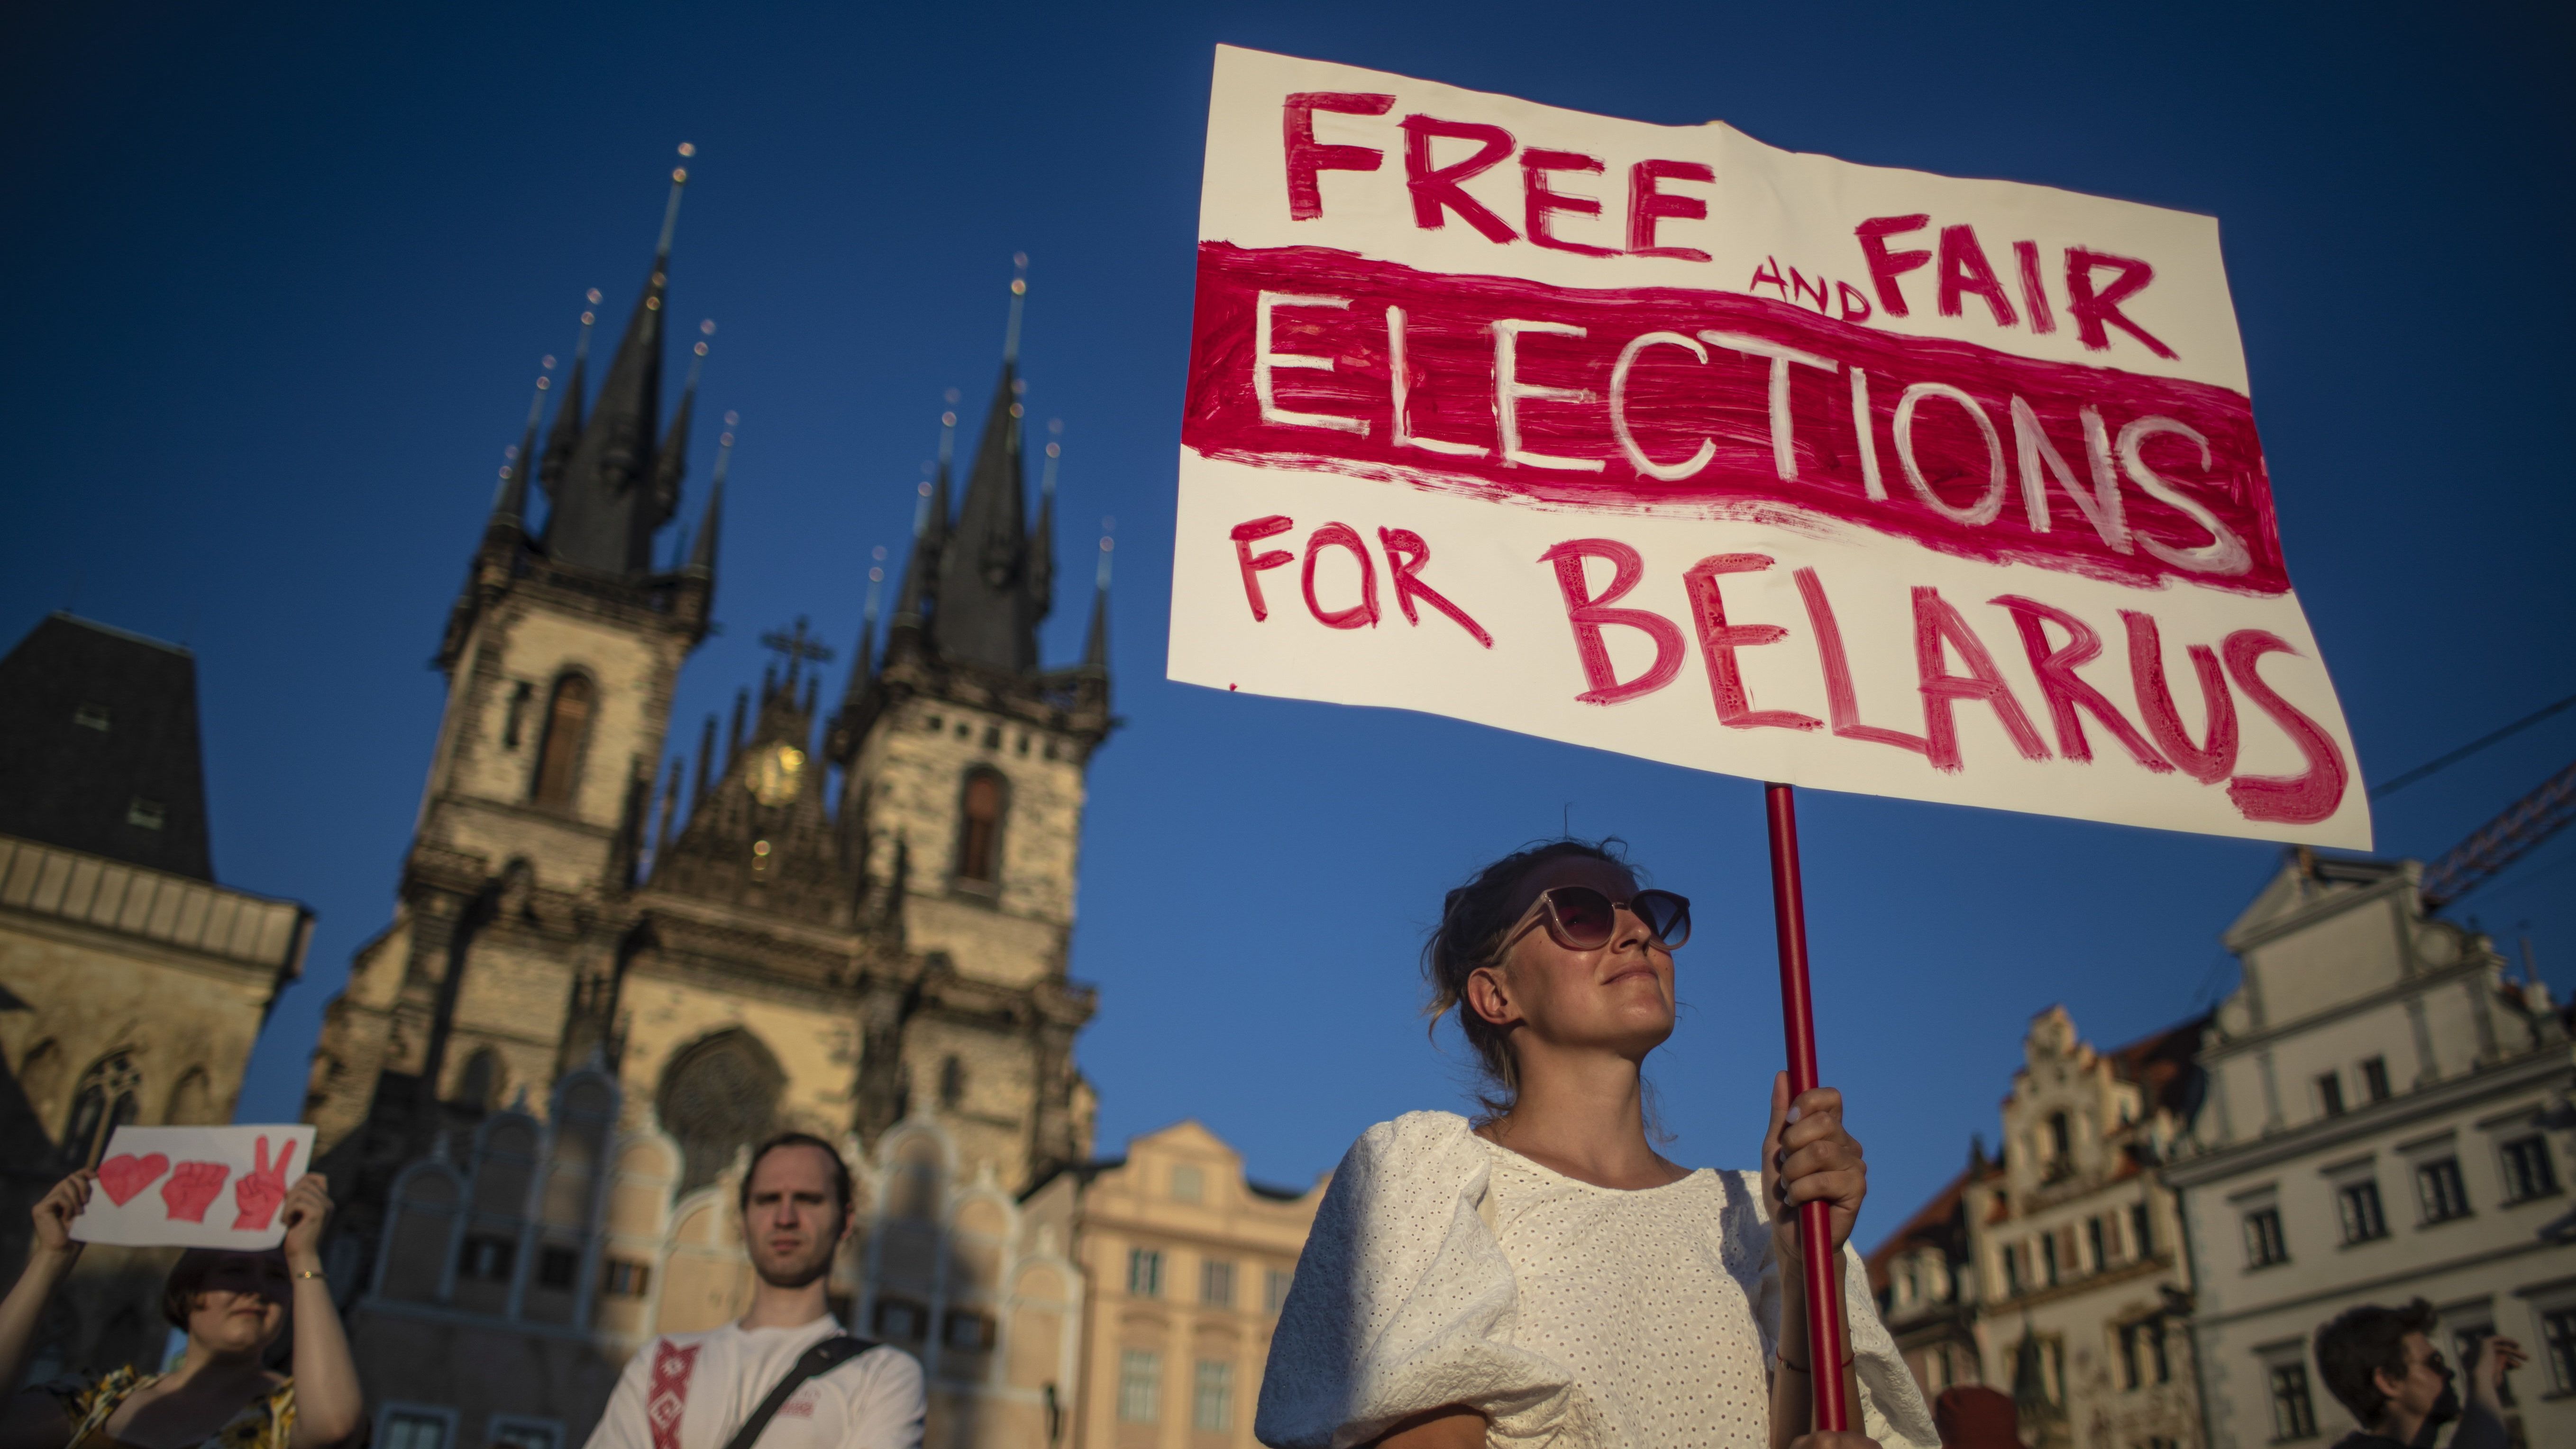 Készen állnak a szankciók Belarusz ellen, már csak bólintaniuk kell az EU vezetőinek